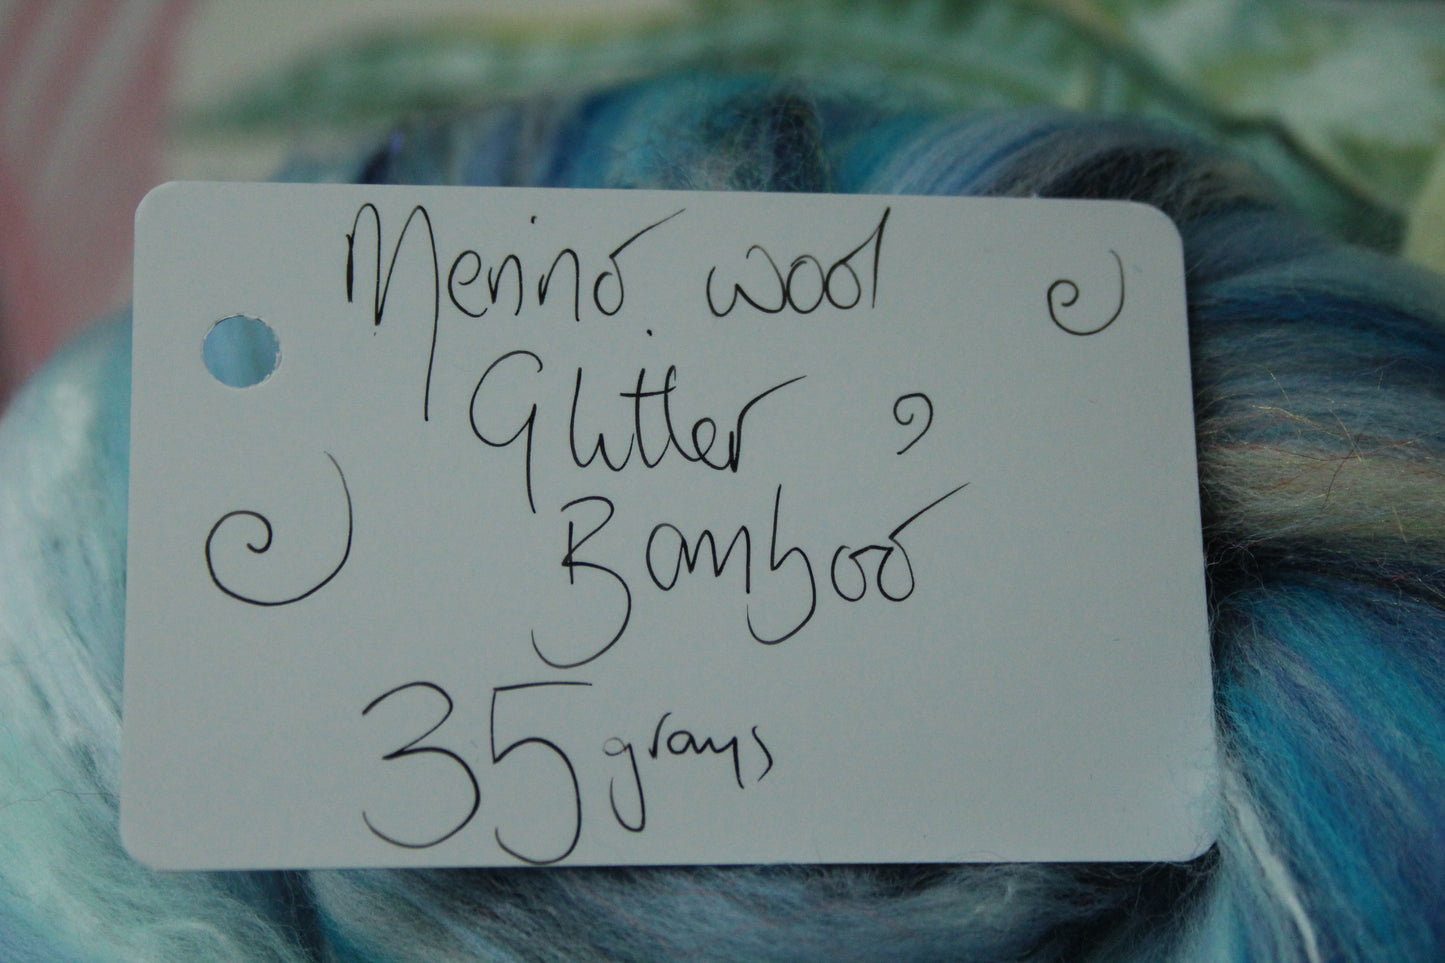 Wool Blend - Blue White - 35 grams / 1.2 oz  - Fibre for felting, weaving or spinning